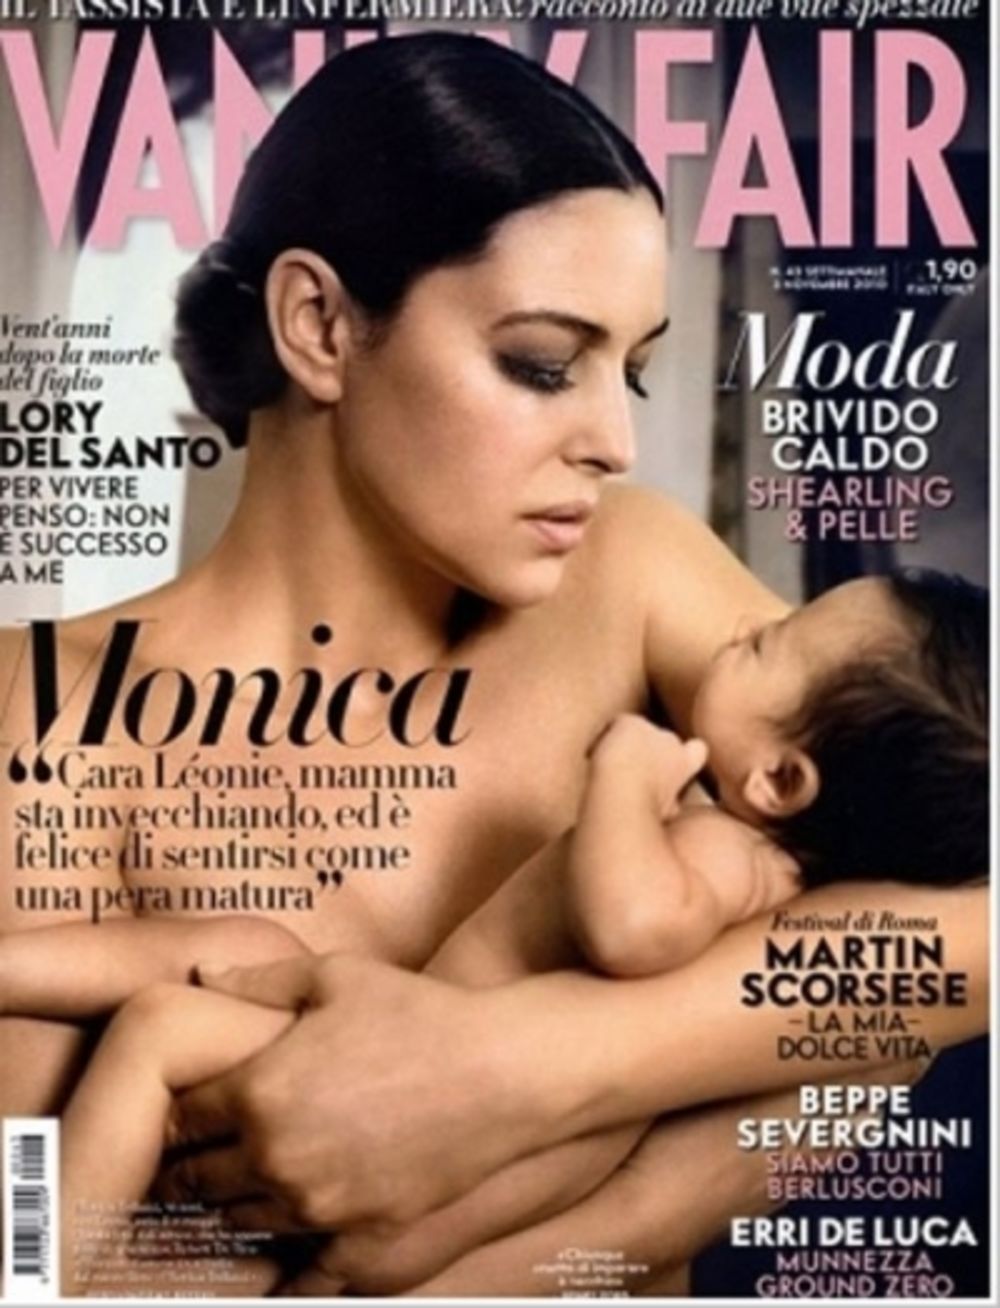 Proslavljena filmska lepotica Monika Beluči još jednom je pozirala naga za magazin Vanity fair, ali ovoga puta sa ćerkicom Leoni